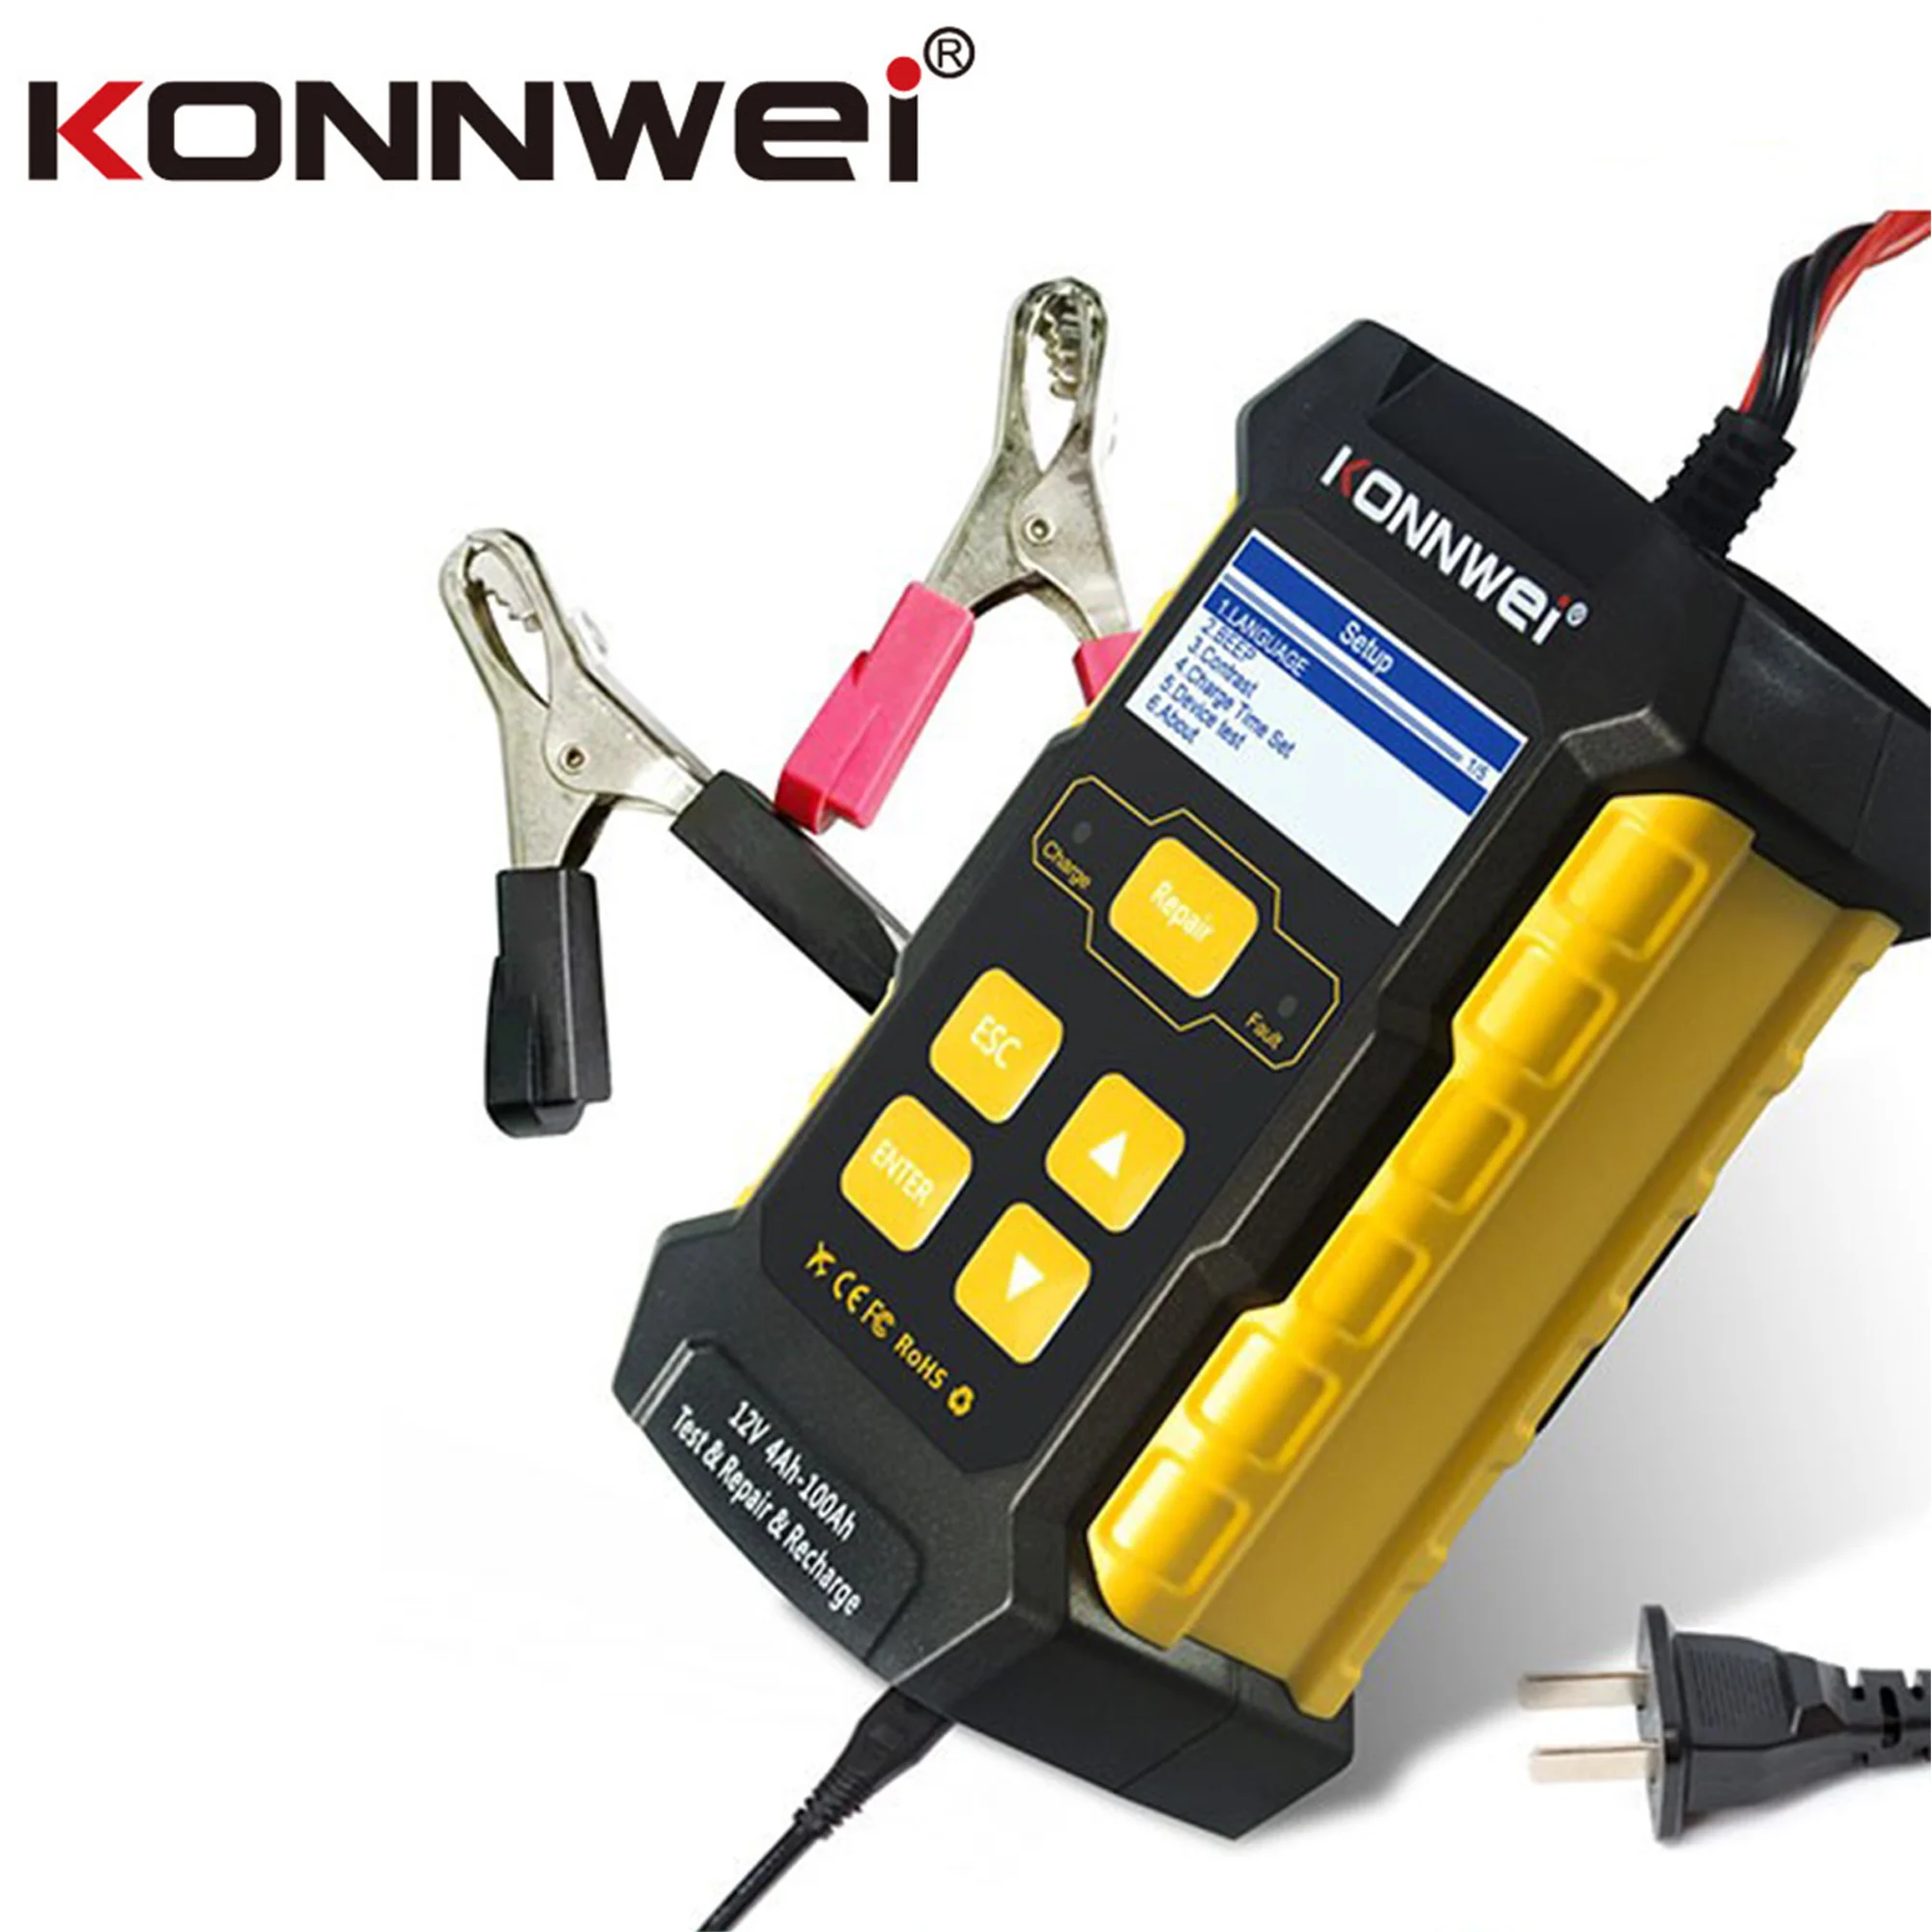 

Тестер аккумулятора KONNWEI KW510, 3-в-1 автомобильное зарядное устройство, устройство для обслуживания и ремонта автомобильных импульсов, используется для тестирования состояния здоровья аккумуляторов